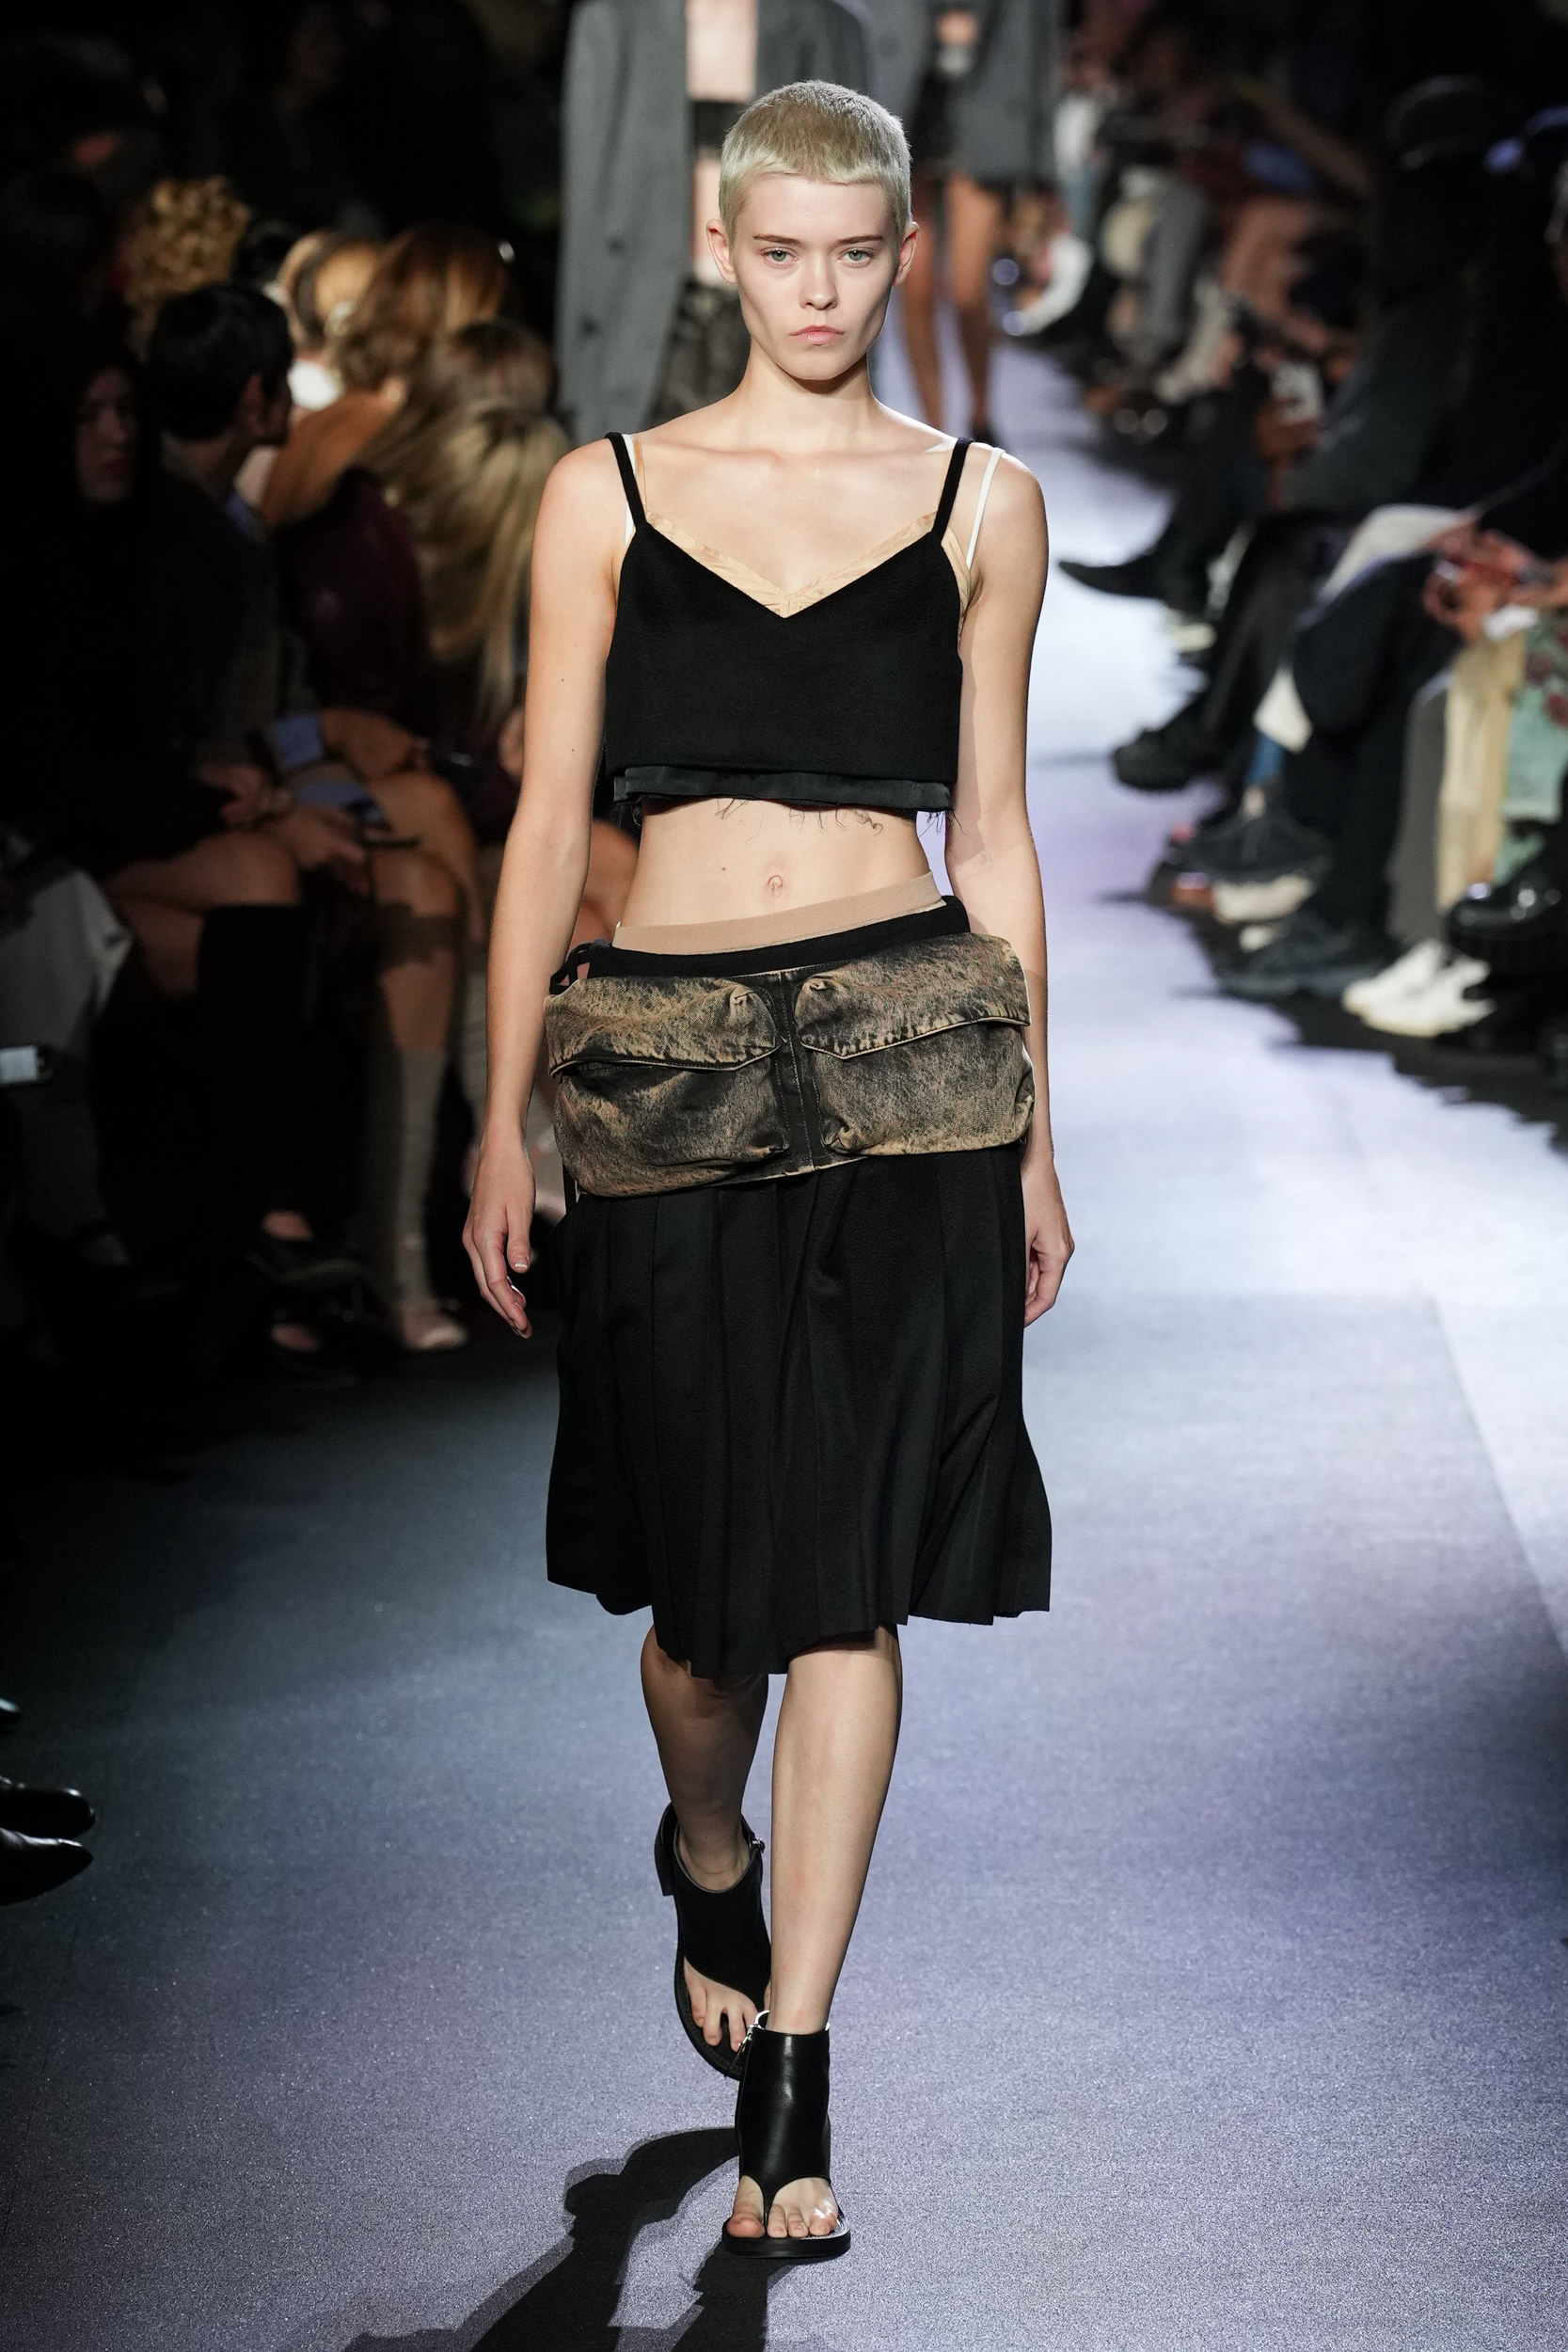 Bolsos, cinturones y cremalleras gigantes: Louis Vuitton hace zoom